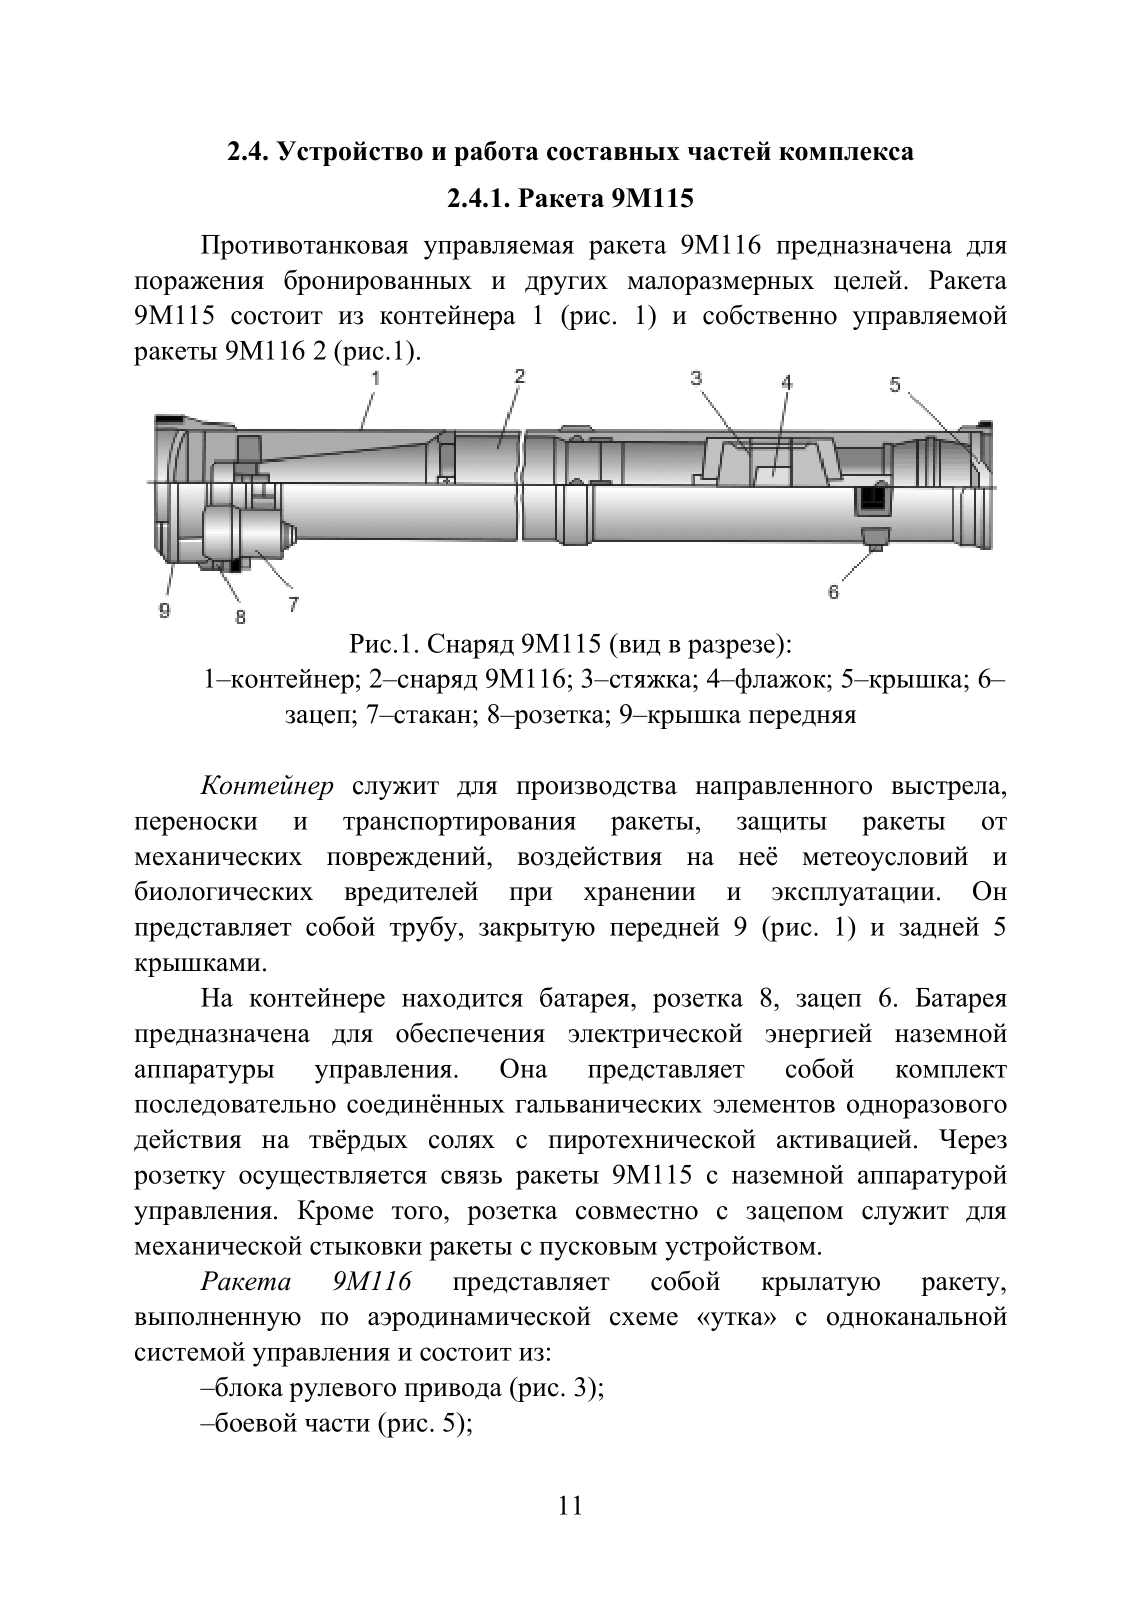 Устройство и функционирование противотанковых ракетных комплексов У 82 (ПТРК) второго поколения: 9К115 «Метис», 9М113 «Конкурс» 9М111 «Фагот». . 